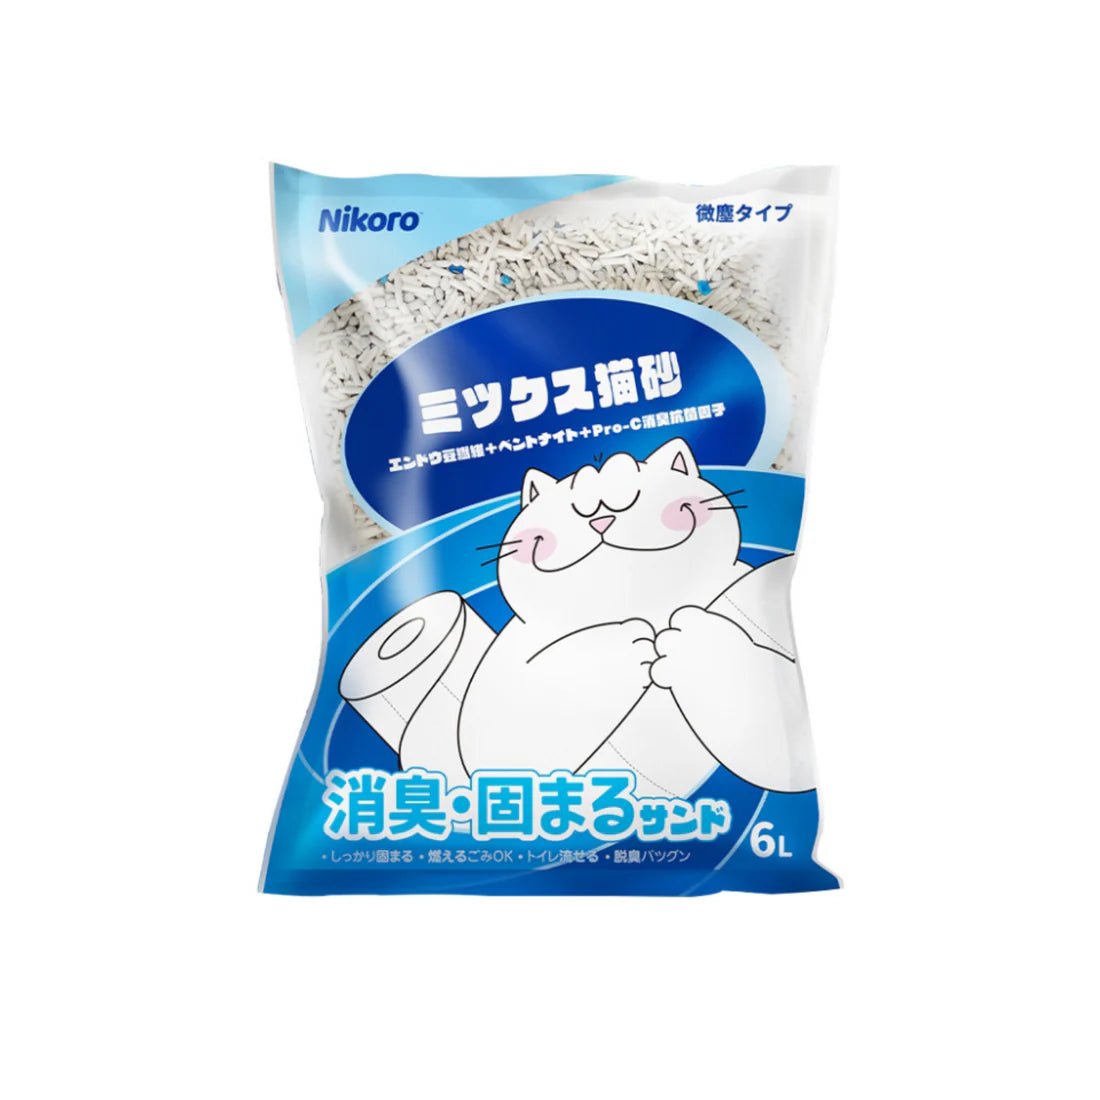 Nikoro - Composite Tofu Cat Litter